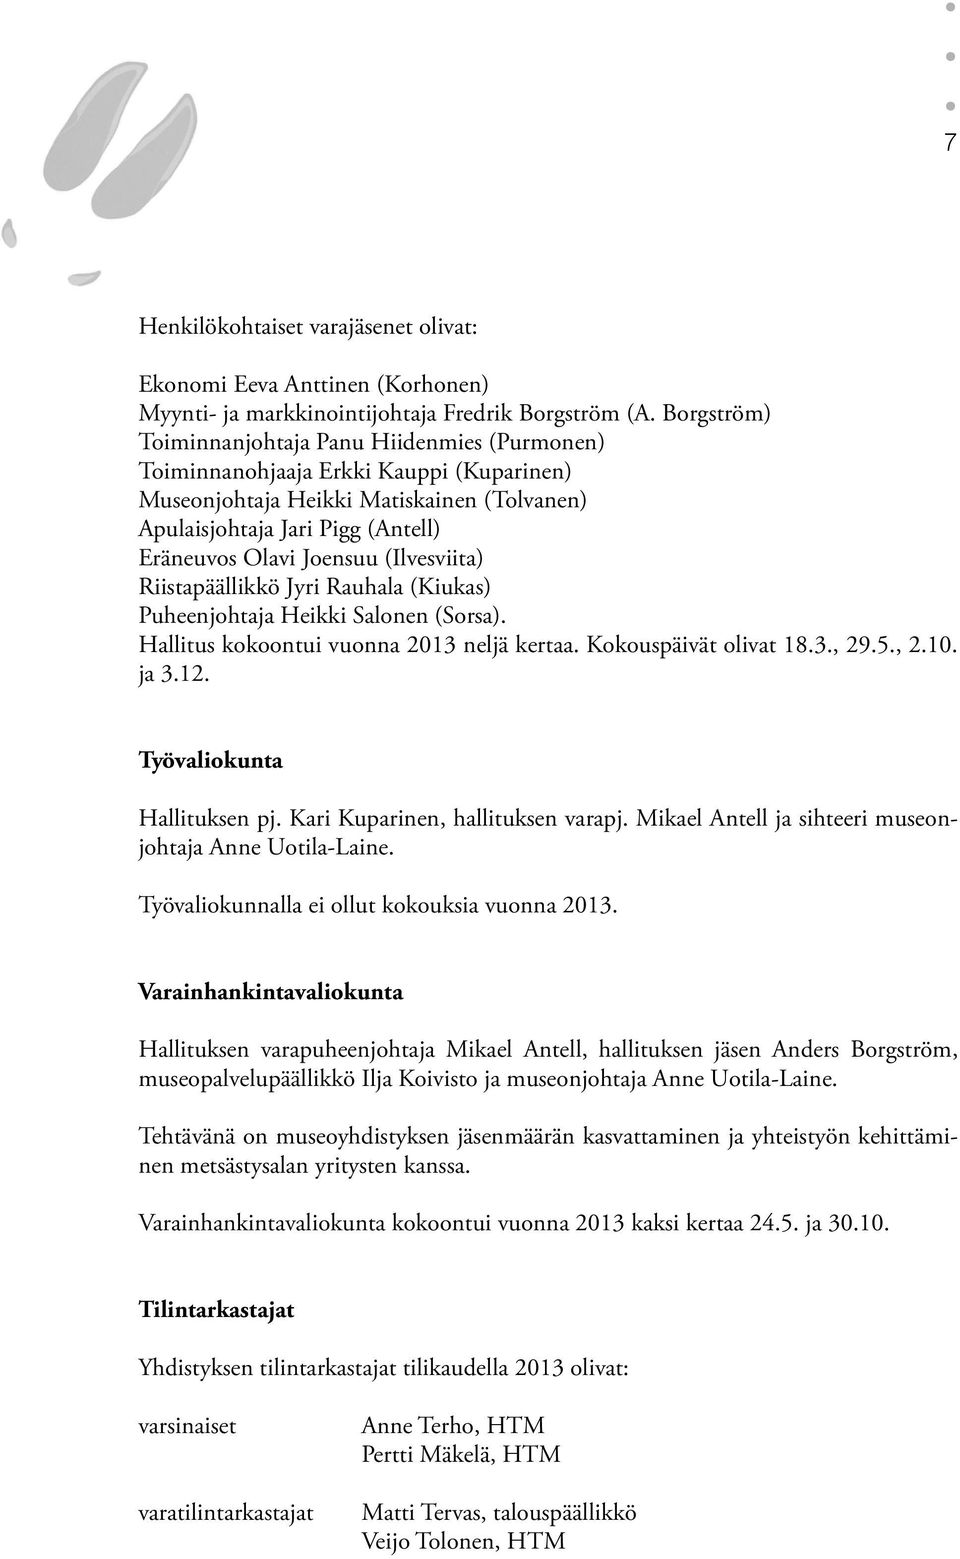 (Ilvesviita) Riistapäällikkö Jyri Rauhala (Kiukas) Puheenjohtaja Heikki Salonen (Sorsa). Hallitus kokoontui vuonna 2013 neljä kertaa. Kokouspäivät olivat 18.3., 29.5., 2.10. ja 3.12.